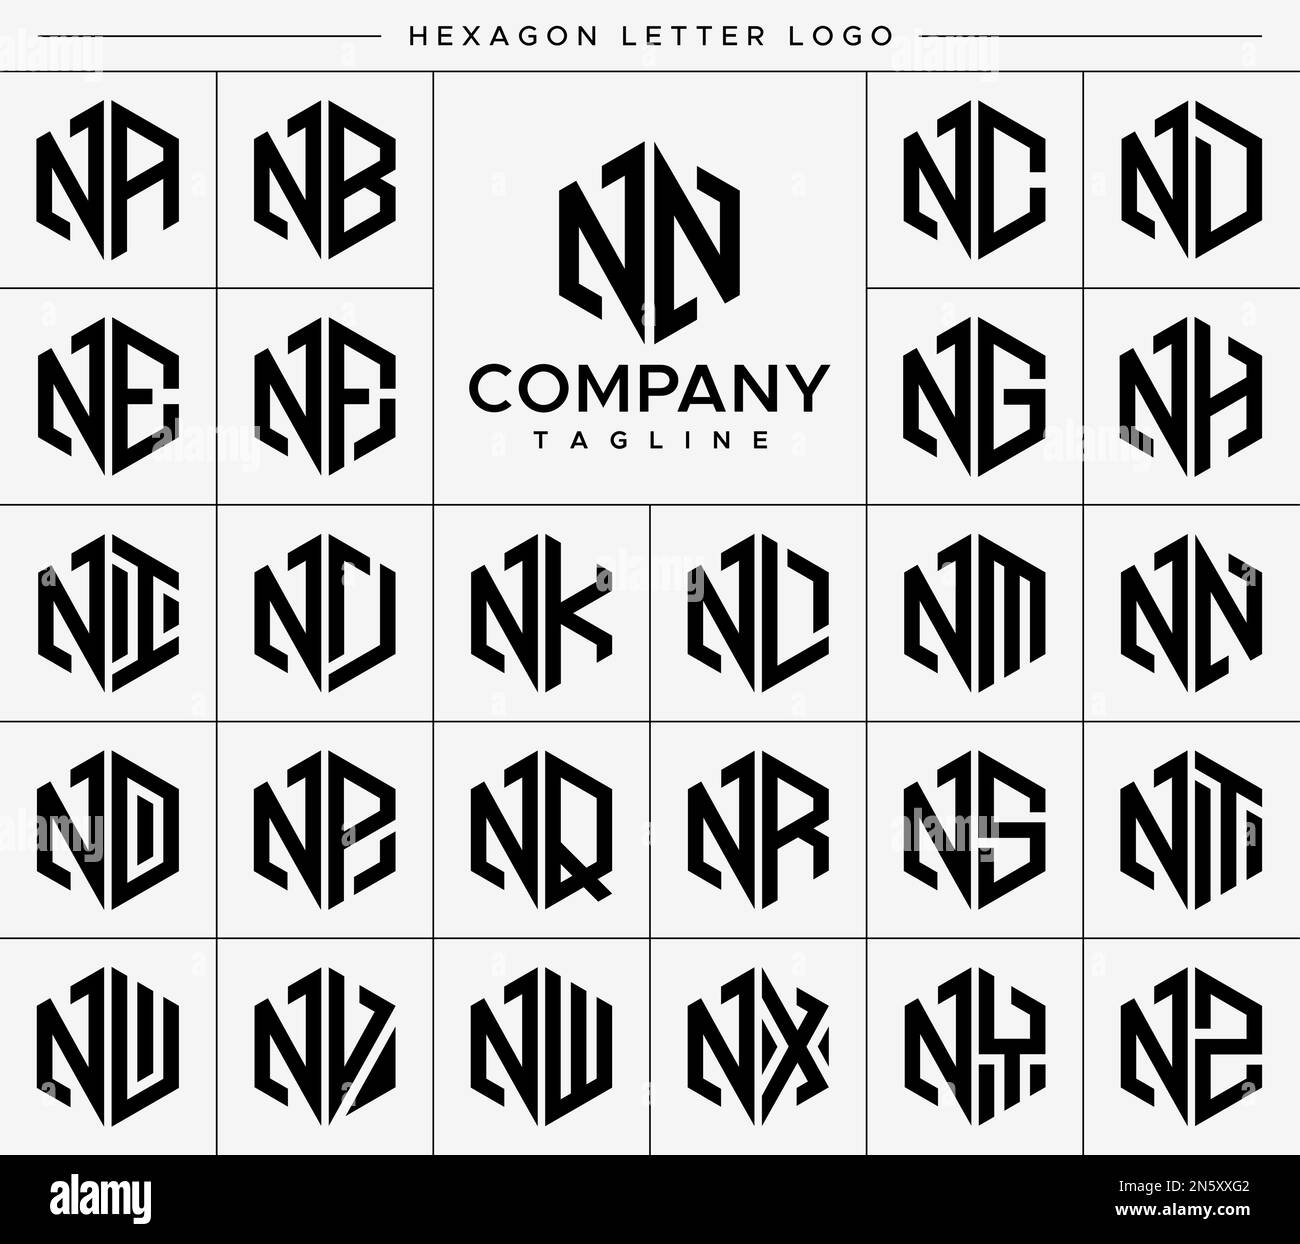 Modern hexagon N letter logo design vector set. Hexagonal NN N logo graphic. Stock Vector